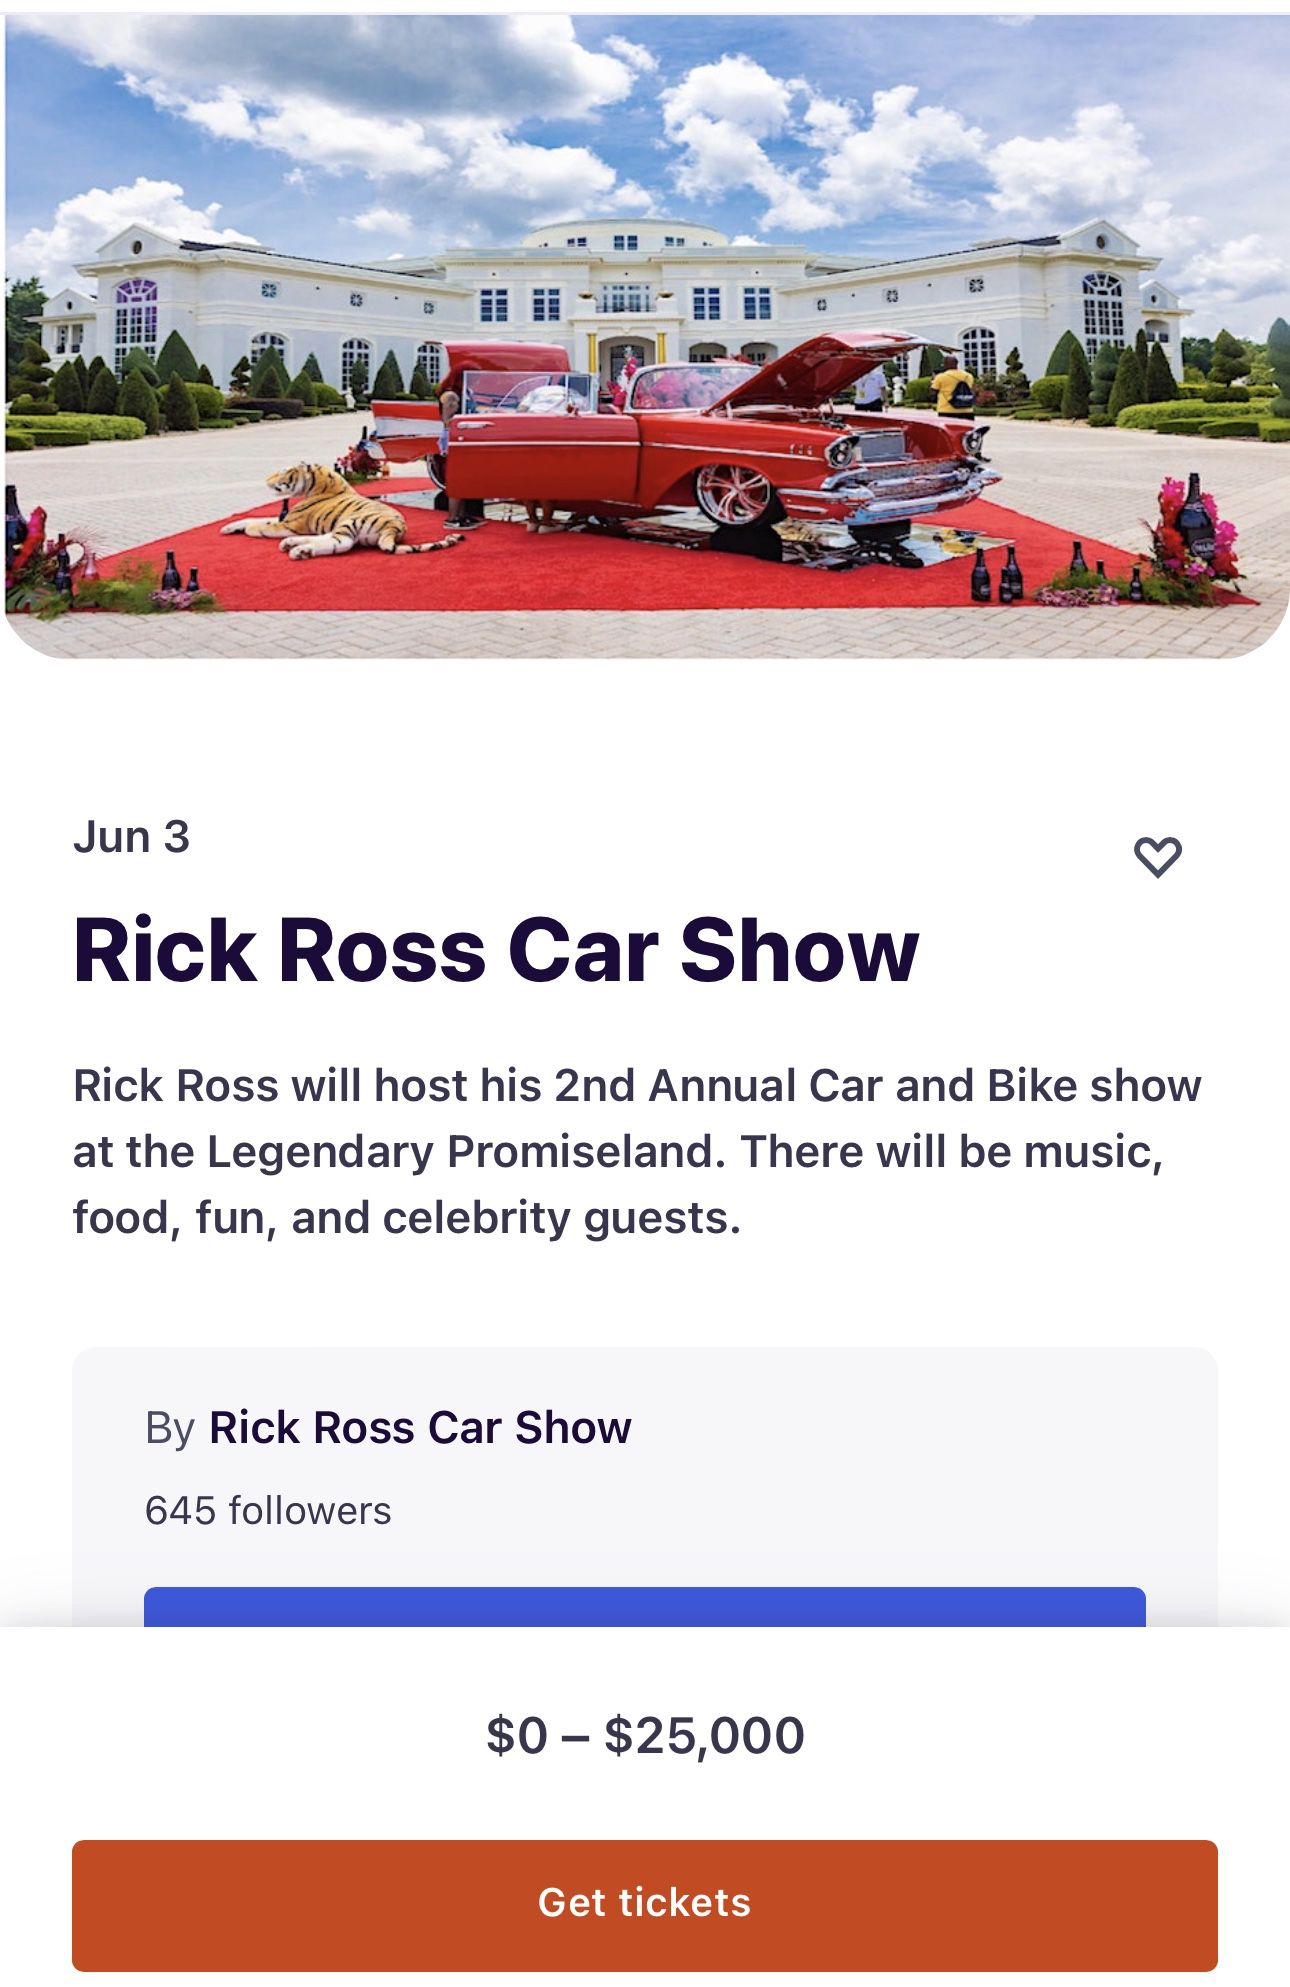 Rick Ross Car Show Tickets